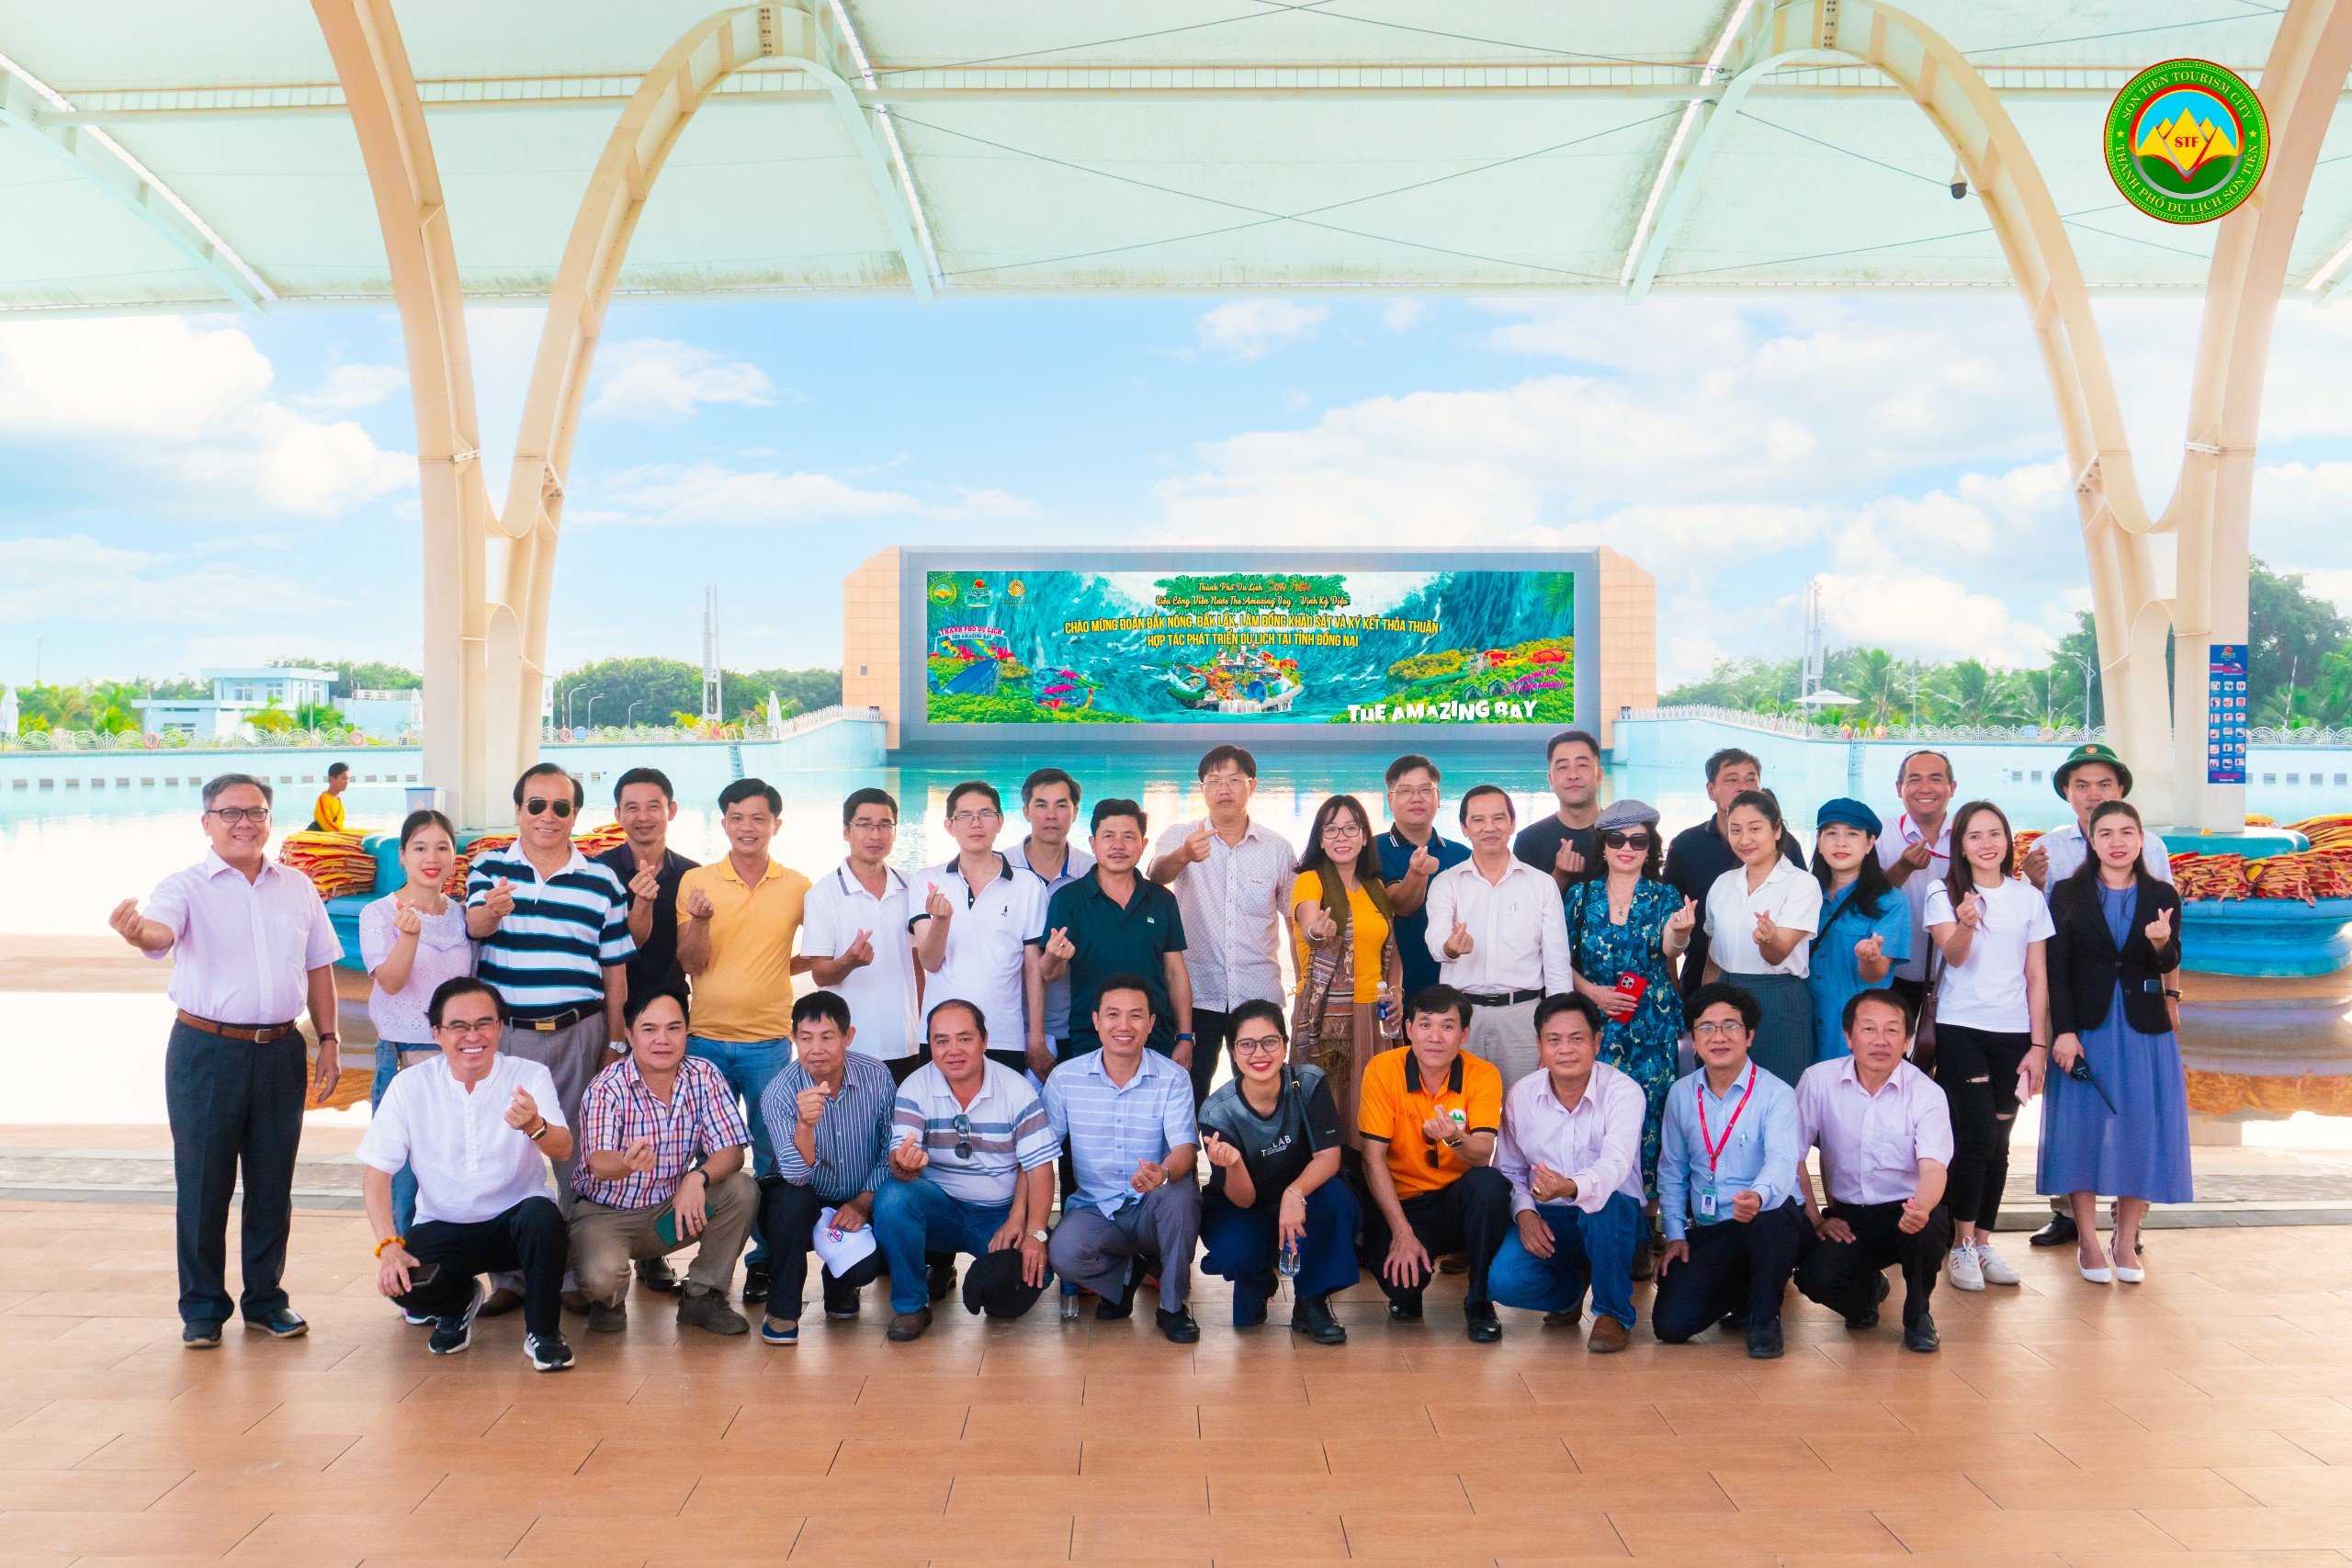 Chào mừng đoàn Farmtrip từ Đắk Nông, Đắk Lắk, Lâm Đồng tới The Amazing Bay!